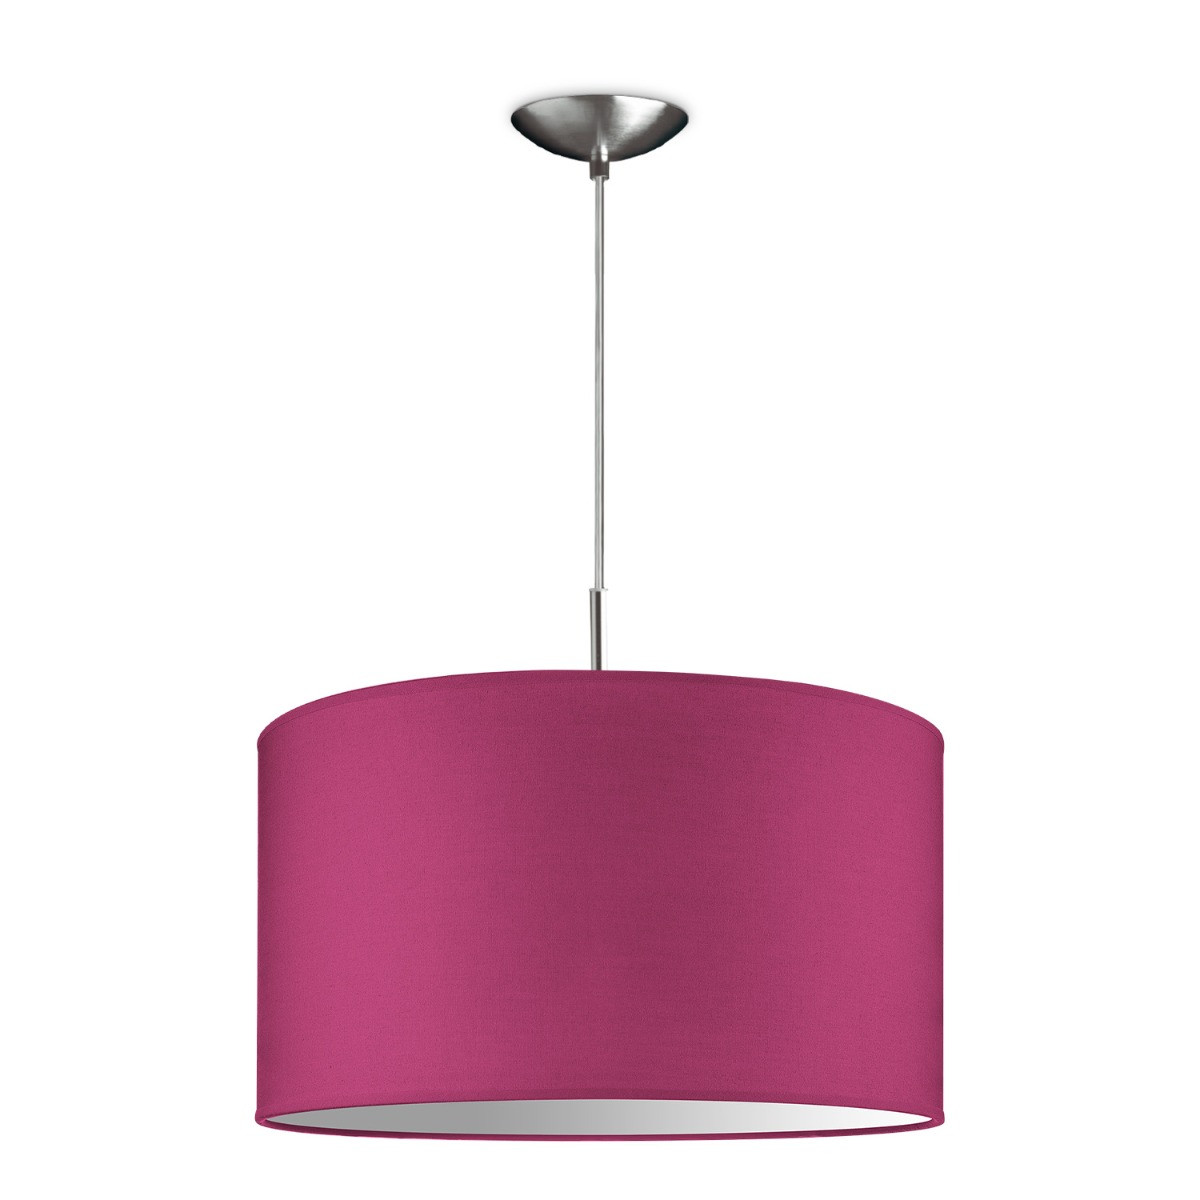 Light depot - hanglamp tube deluxe bling Ø 40 cm - roze - Outlet